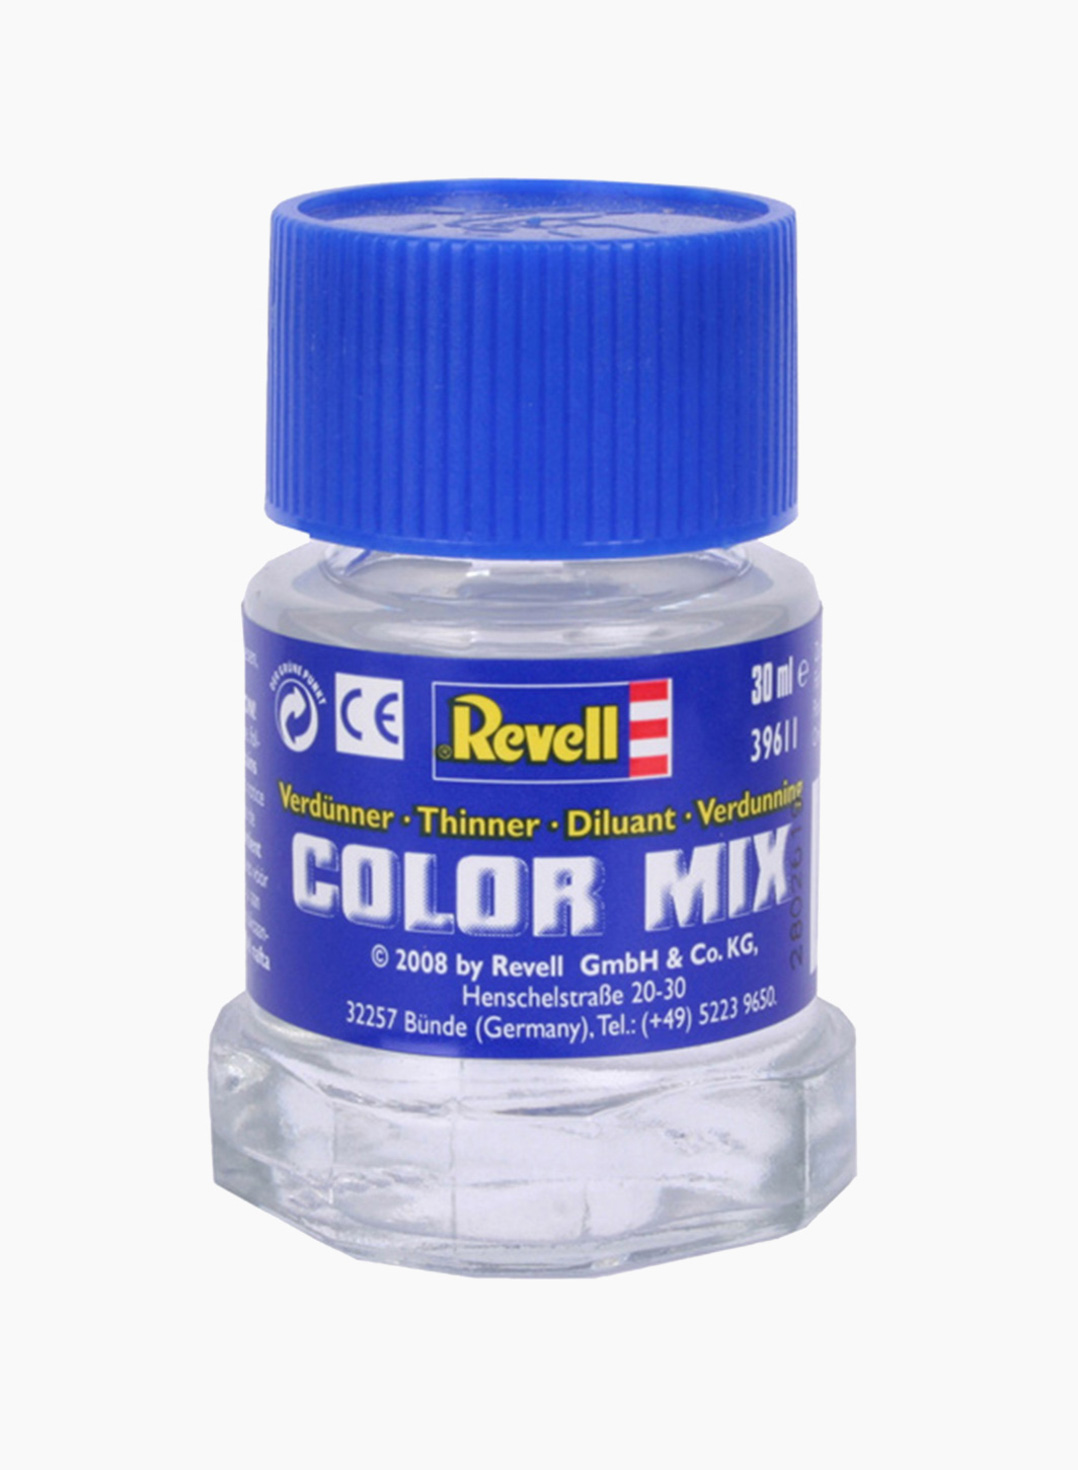 Revell Արծնաներկեր Ջրիկացուցիչ «Color Mix»